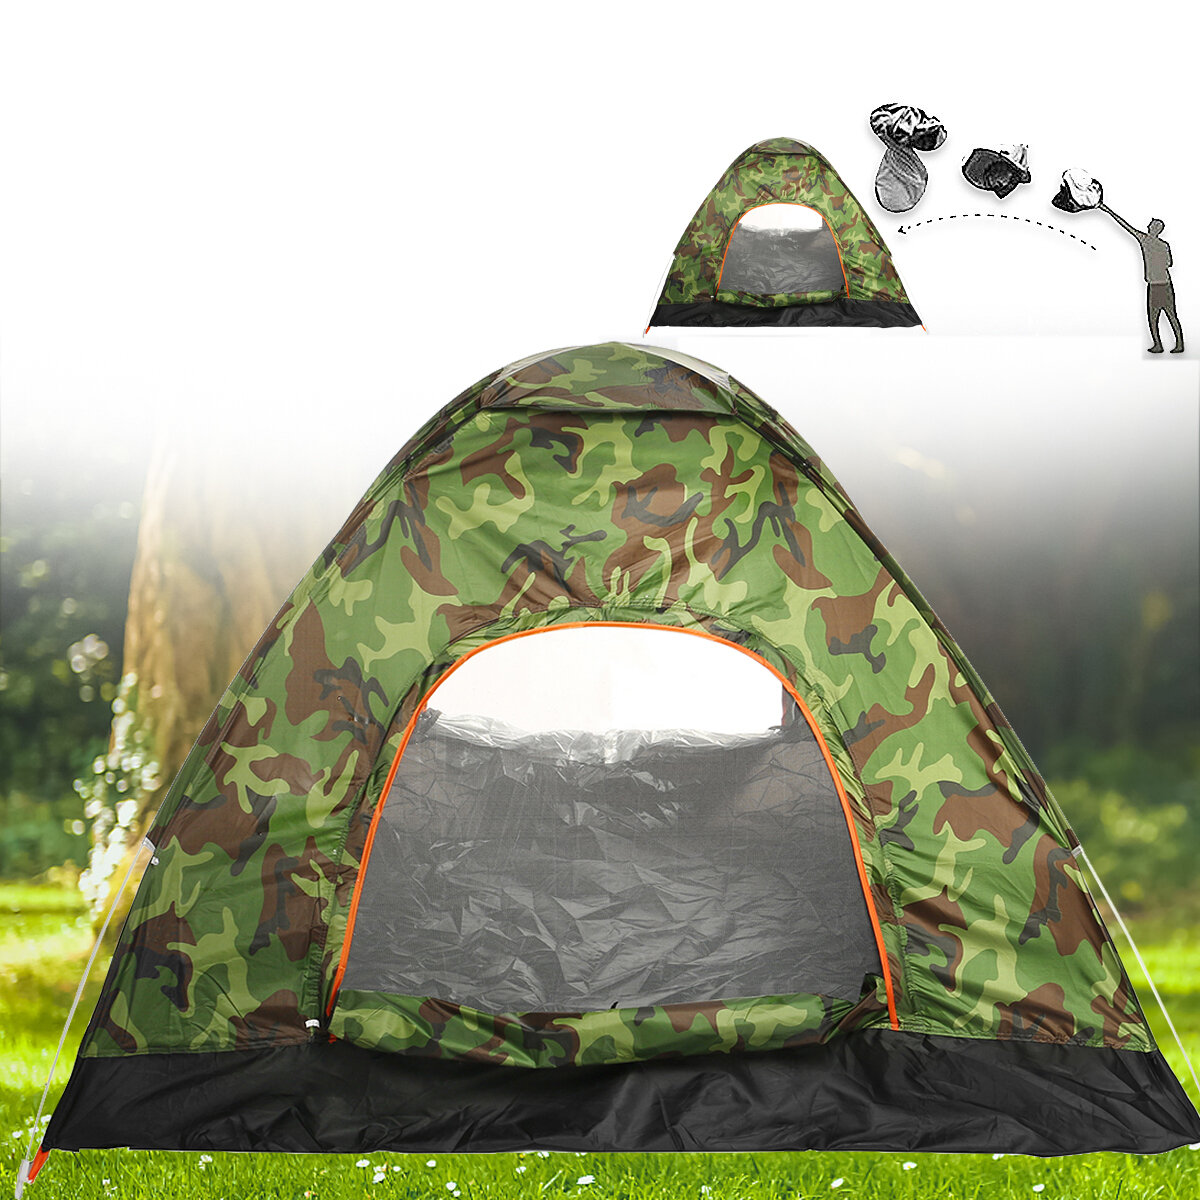 IPRee® Automatikus sátor 1-4 személy részére, vízálló, szélálló, UV-szűrő napernyővel, ultrakönnyű utazáshoz és túrázáshoz.